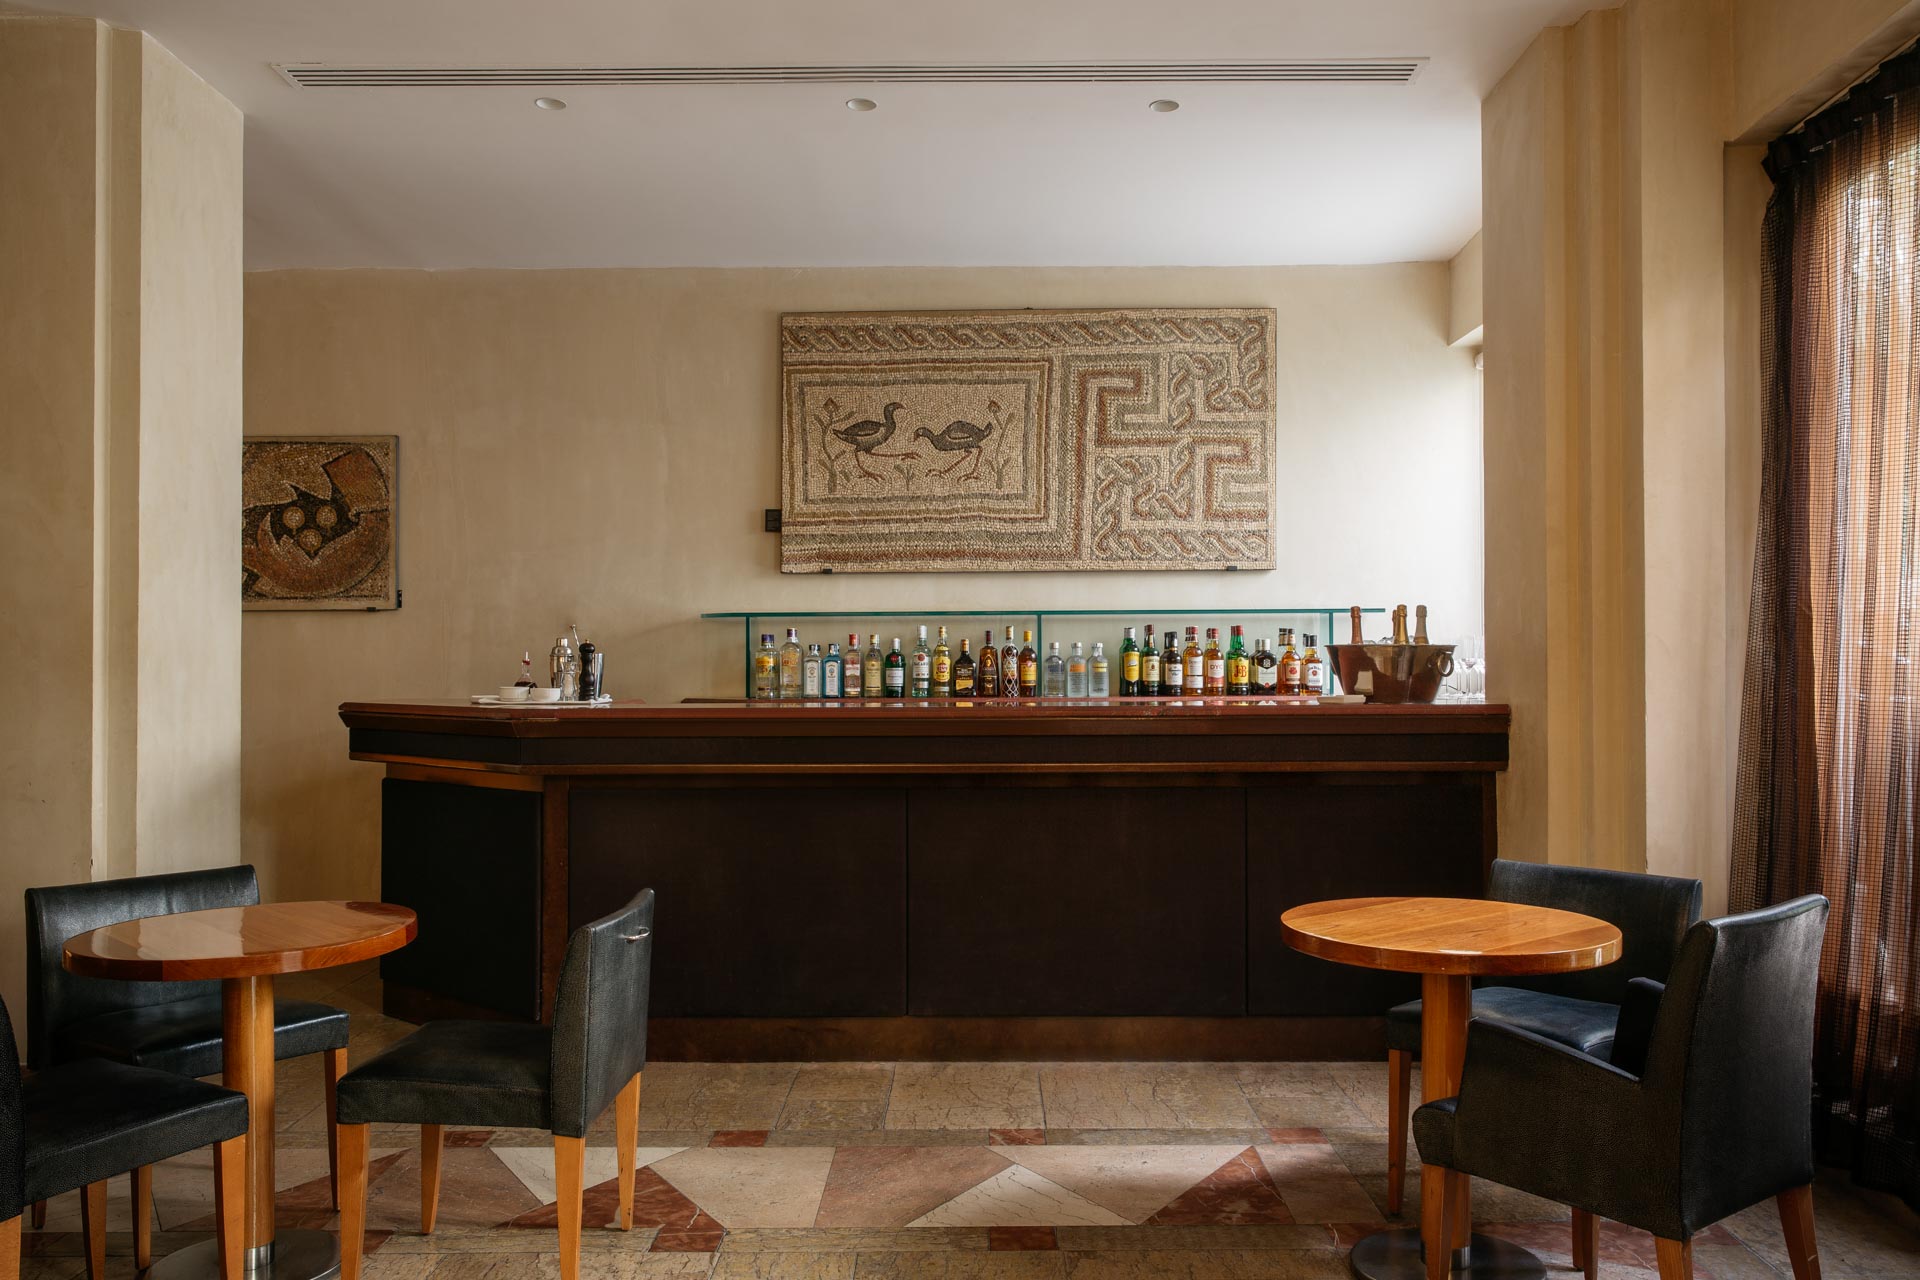 Principe de Asturias Bar and Seating